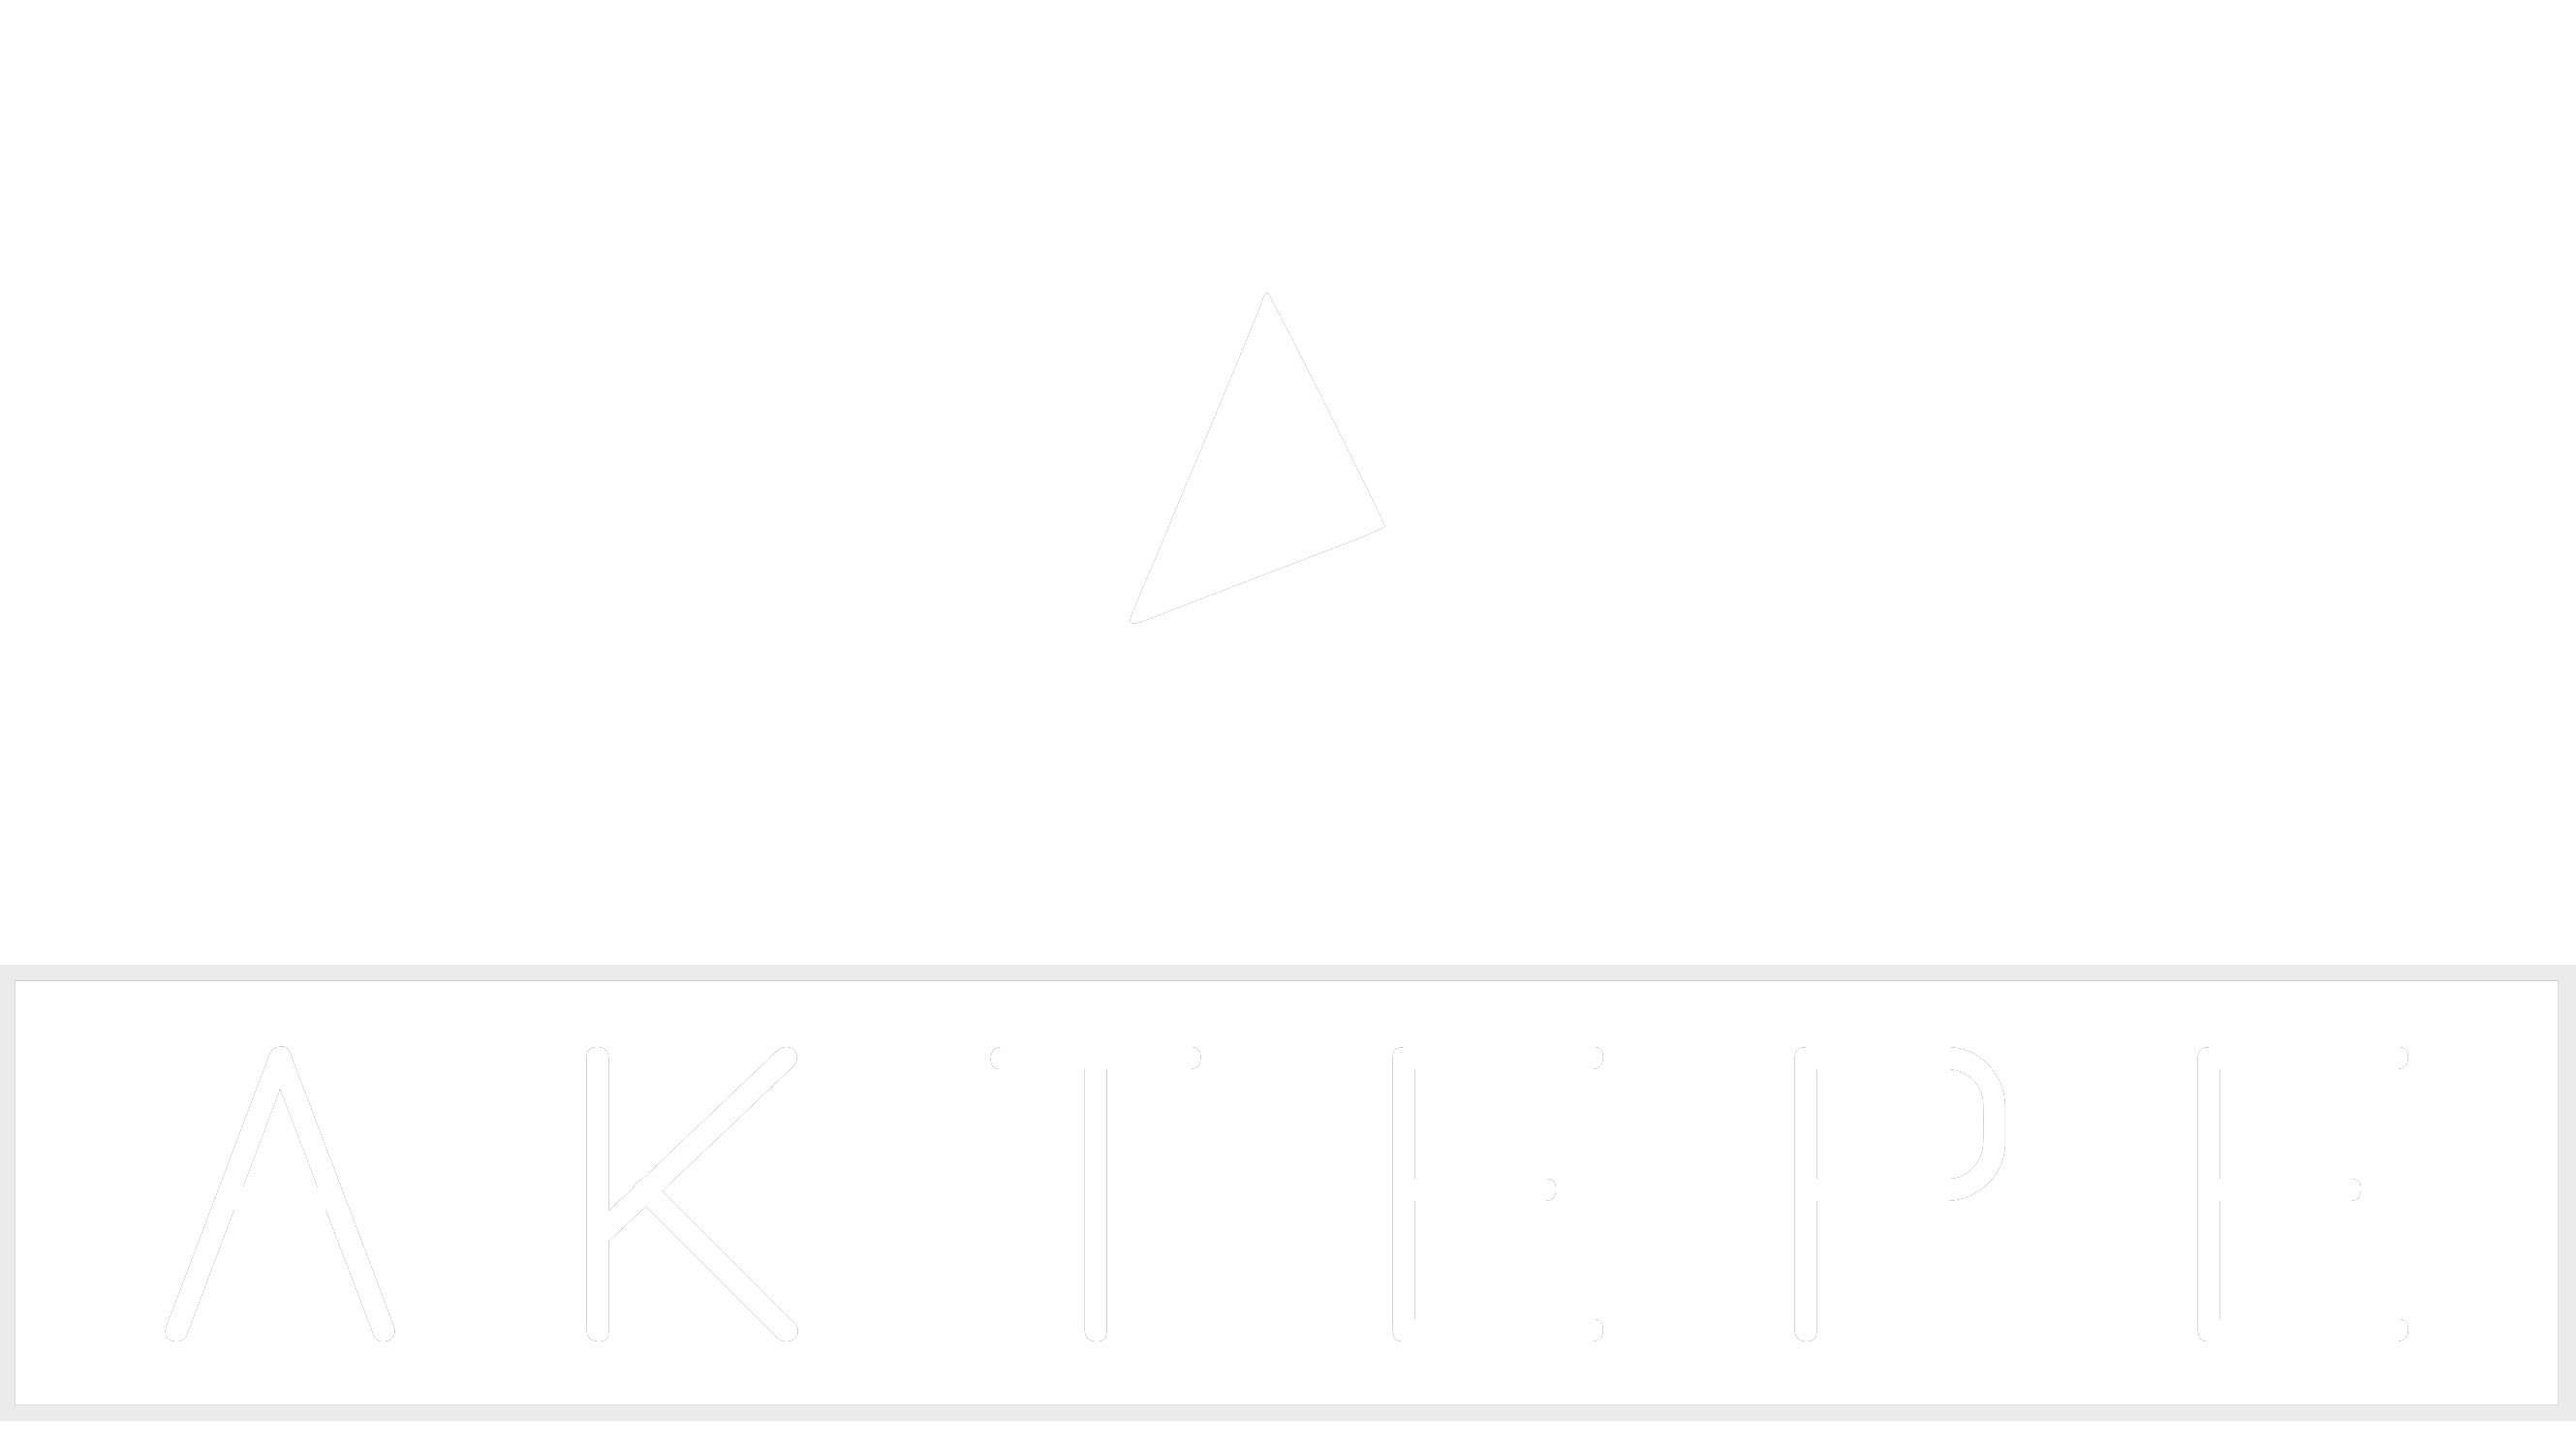 Edge - Aktepe Shop - Oto Müzik Görüntü Navigasyon Sistemleri ve Teyp Çerçevesi Satış Merkezi